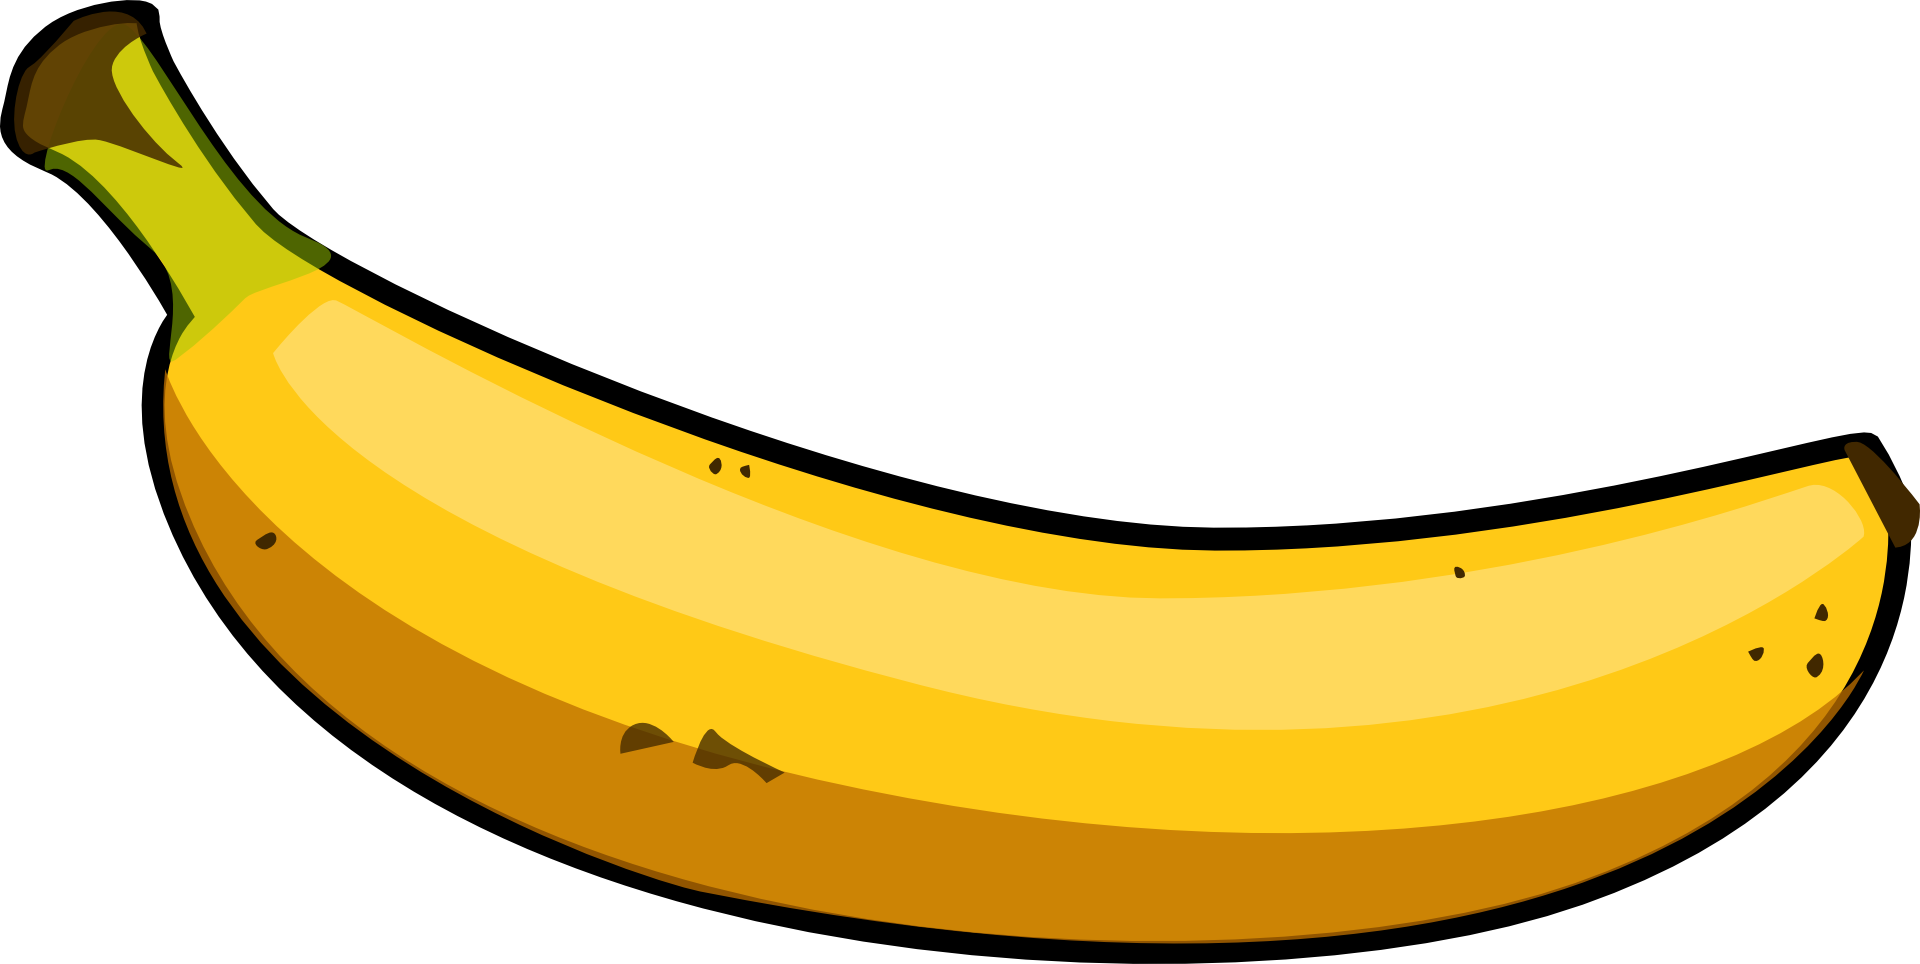 Banana clipart vectors download free vector art image - Cliparting.com